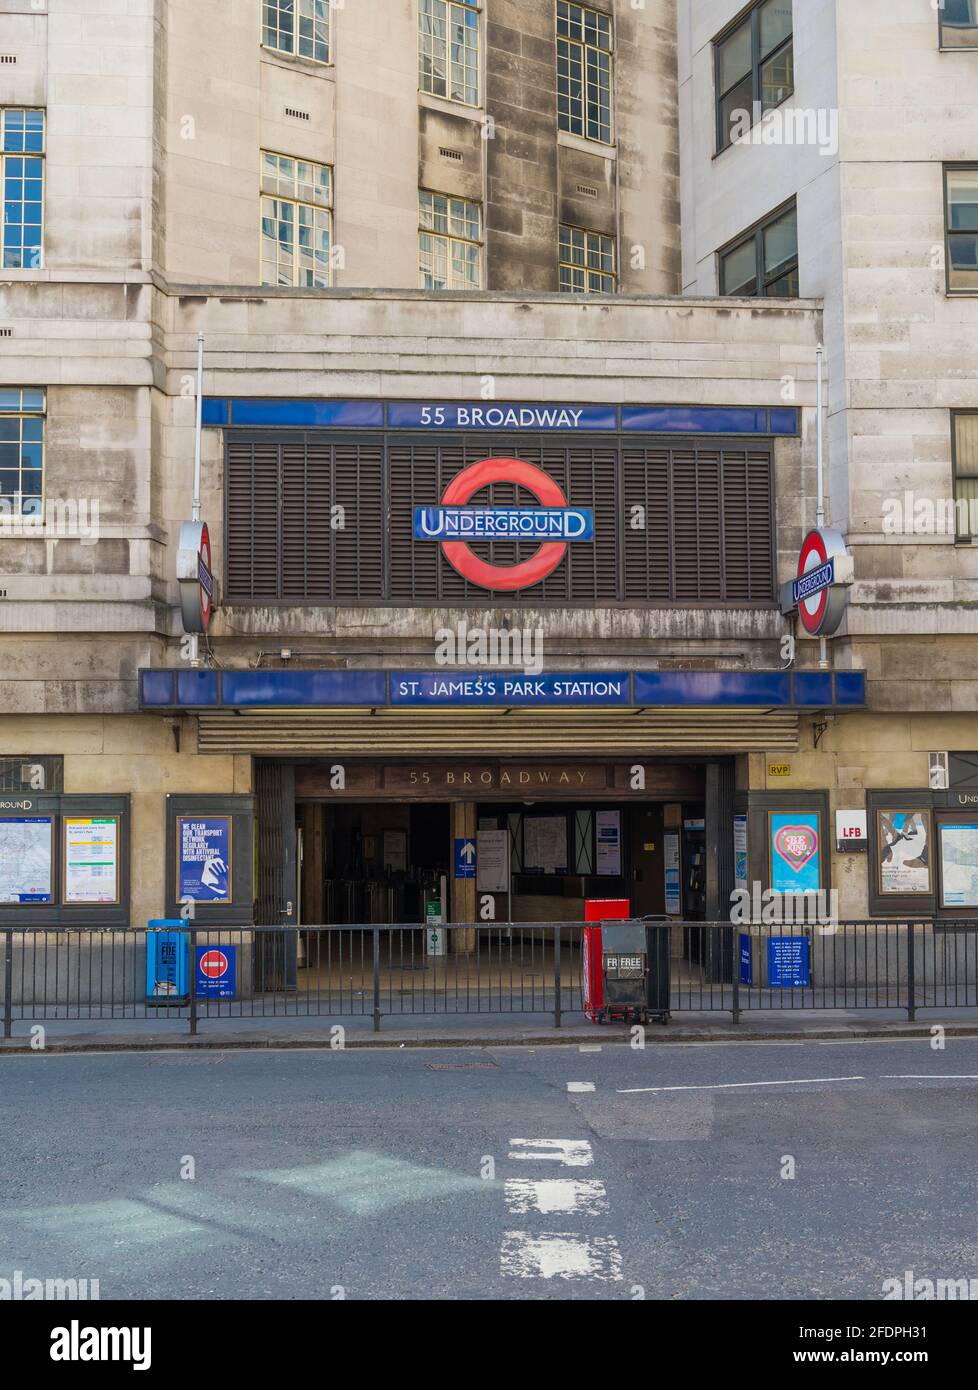 St. James's Park underground station. London, England, UK Stock Photo